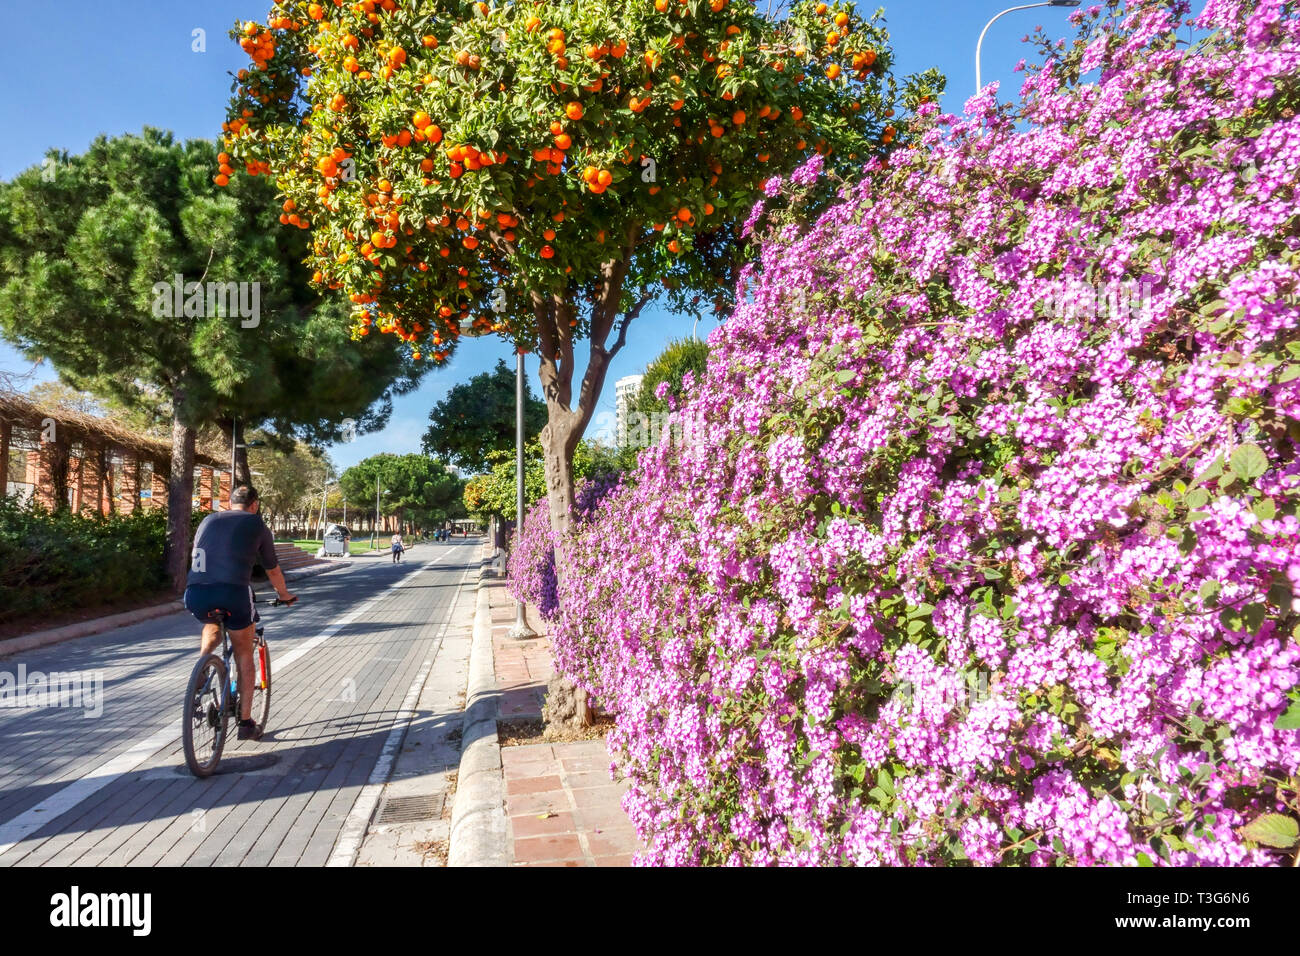 Valencia Gardens, Orange Tree, balades cyclistes dans la floraison piste cyclable ancienne rivière Turia Espagne motard Valencia Espagne Europe Lifestyle Active Life Banque D'Images